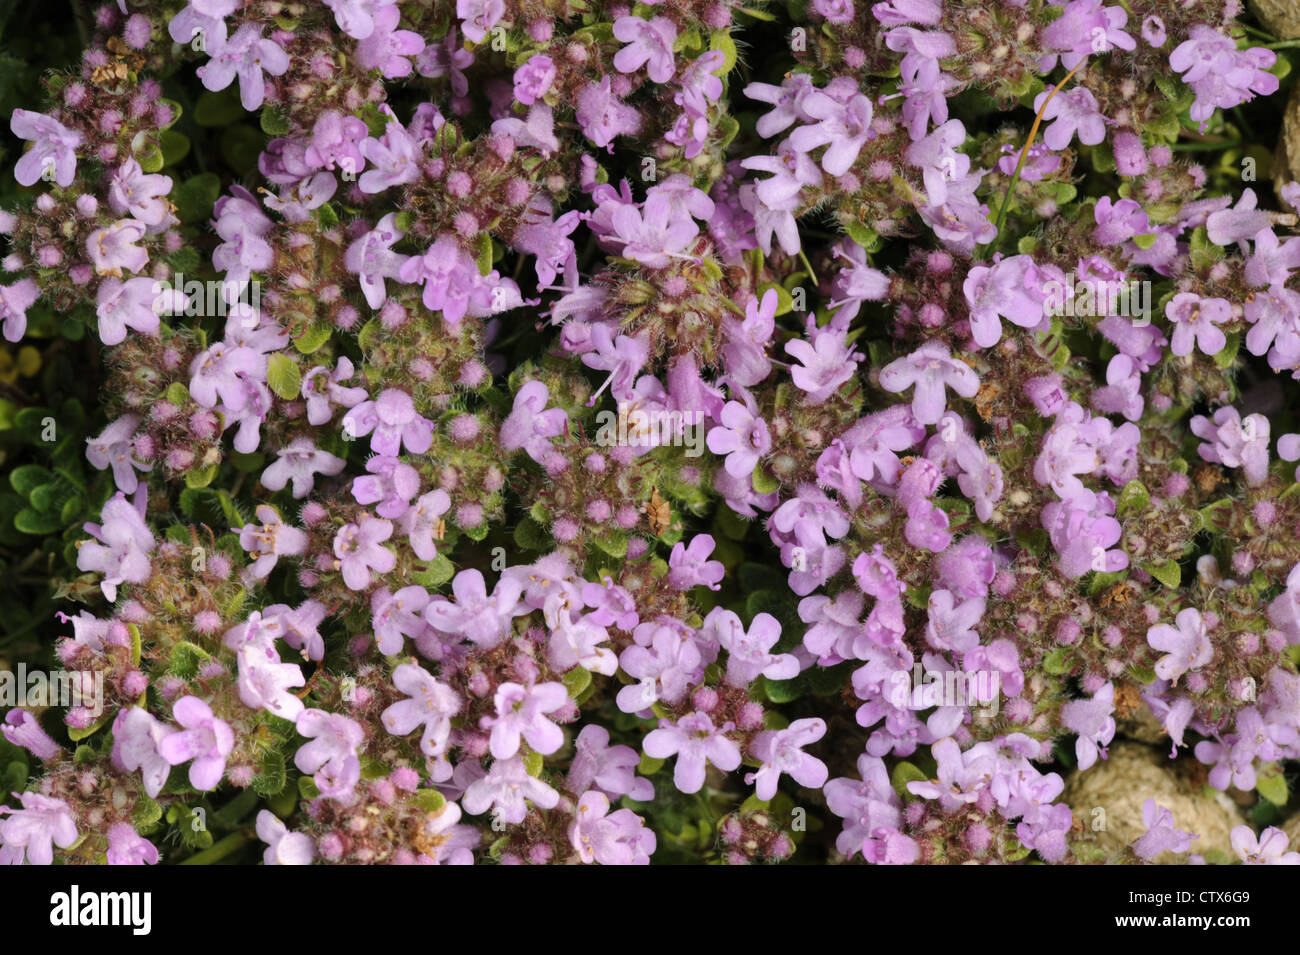 WILD THYME Thymus polytrichus (Lamiaceae) Stock Photo